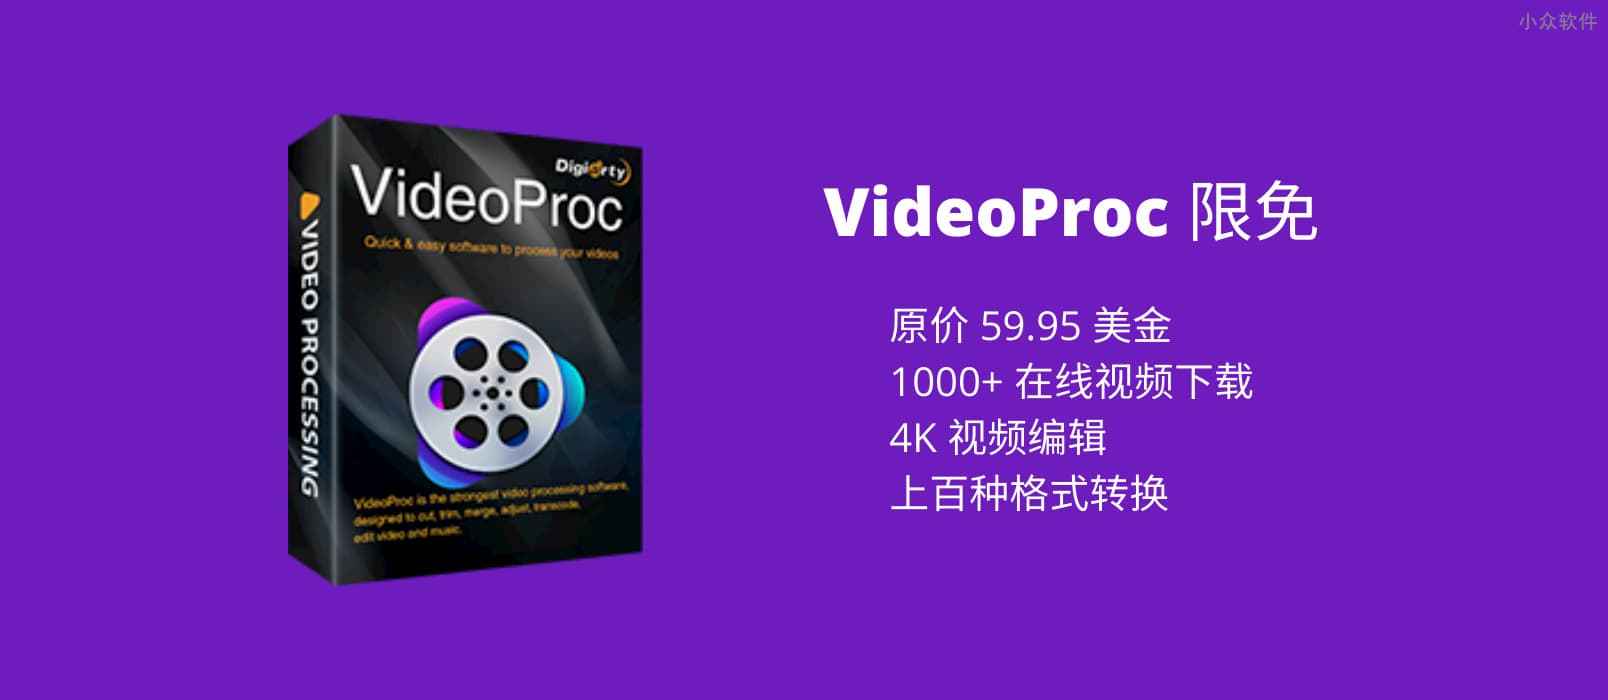 价值 59.95 美元，集在线视频下载、视频编辑与格式转换于一体的工具 VideoProc 限免 1